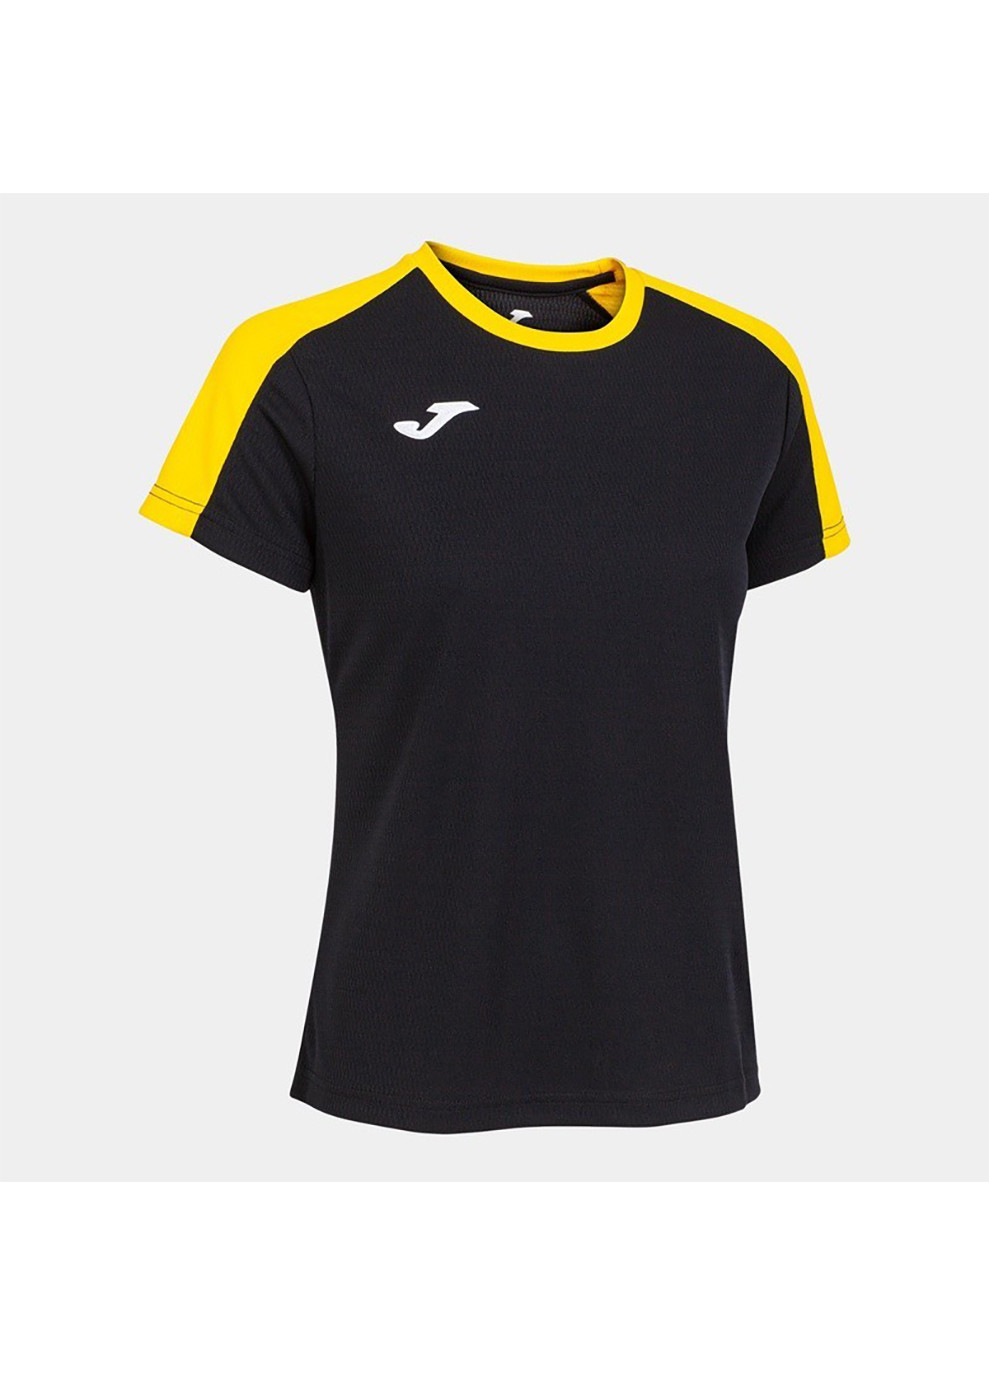 Желтая демисезон футболка eco championship short sleeve t-shirt черный,жёлтый Joma